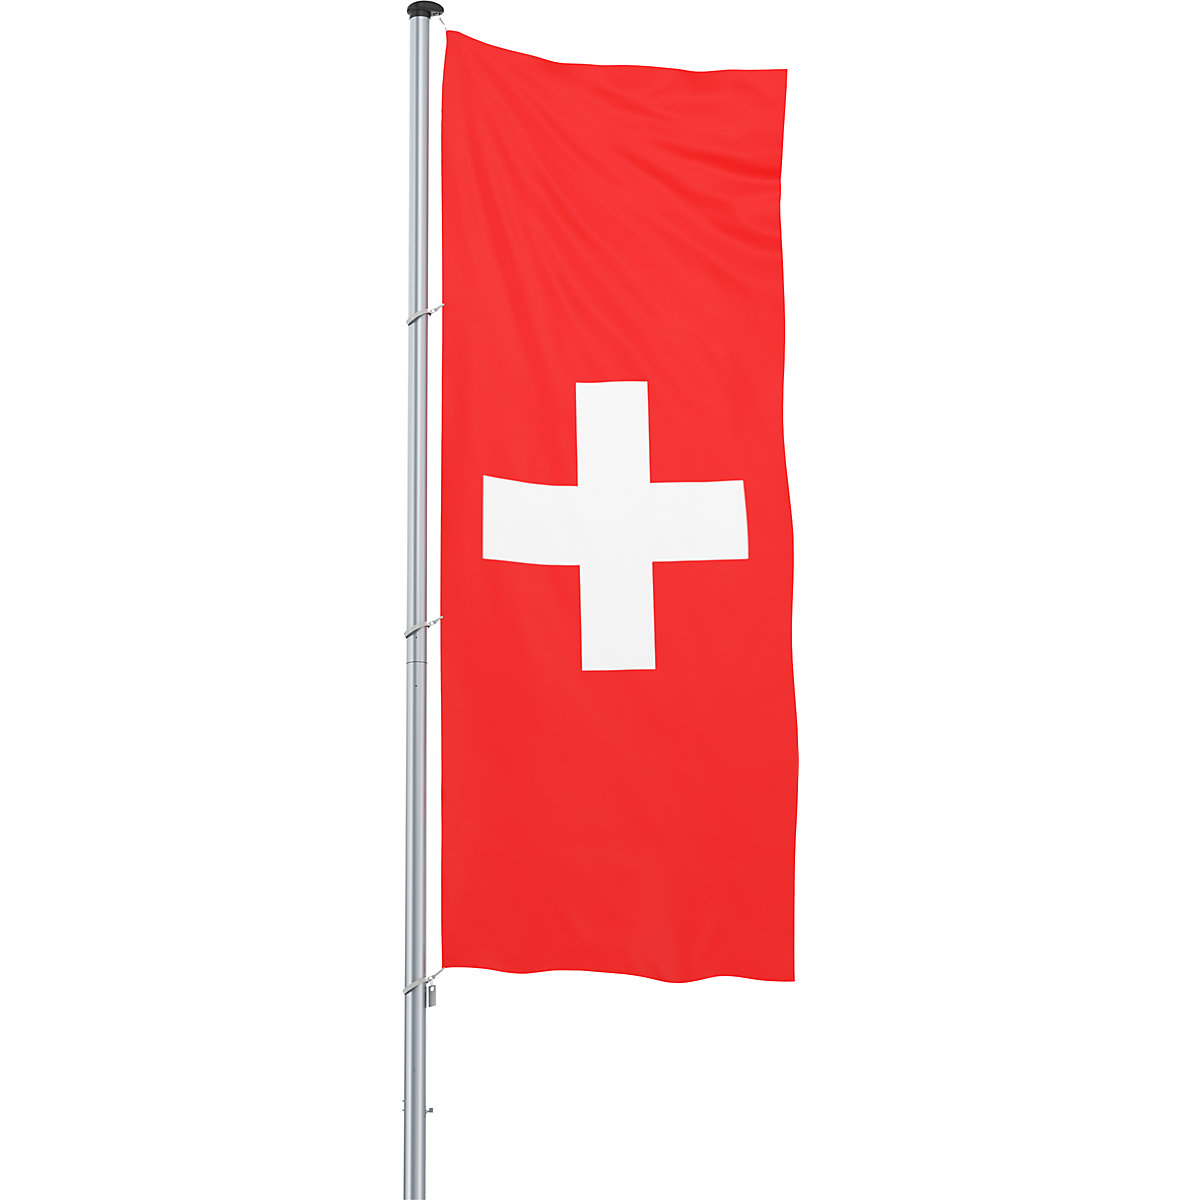 Mannus – Bandera para izar/bandera del país, formato 1,2 x 3 m, Suiza